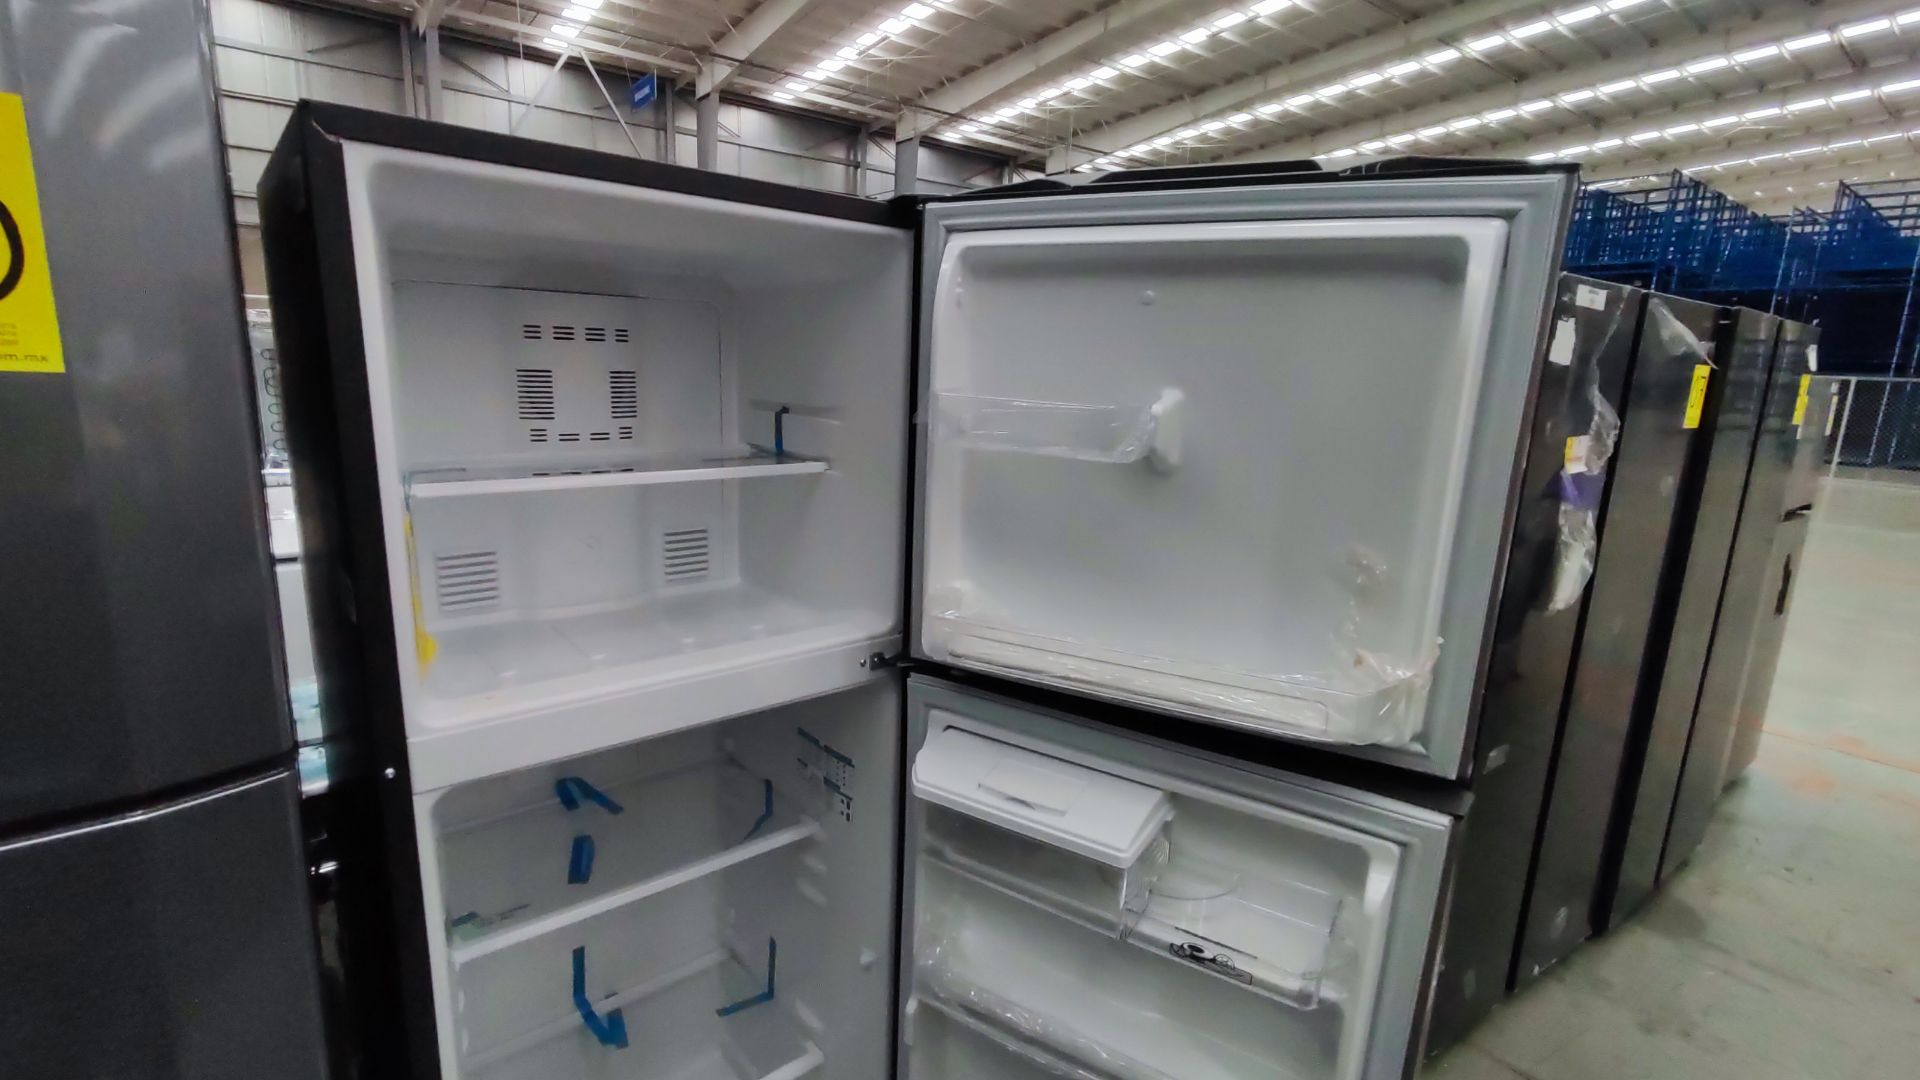 1 Refrigerador Marca Mabe, Modelo RMA300FJRM, Serie 2111B7011524, Color Gris Detalles Estéticos. Fa - Image 9 of 12